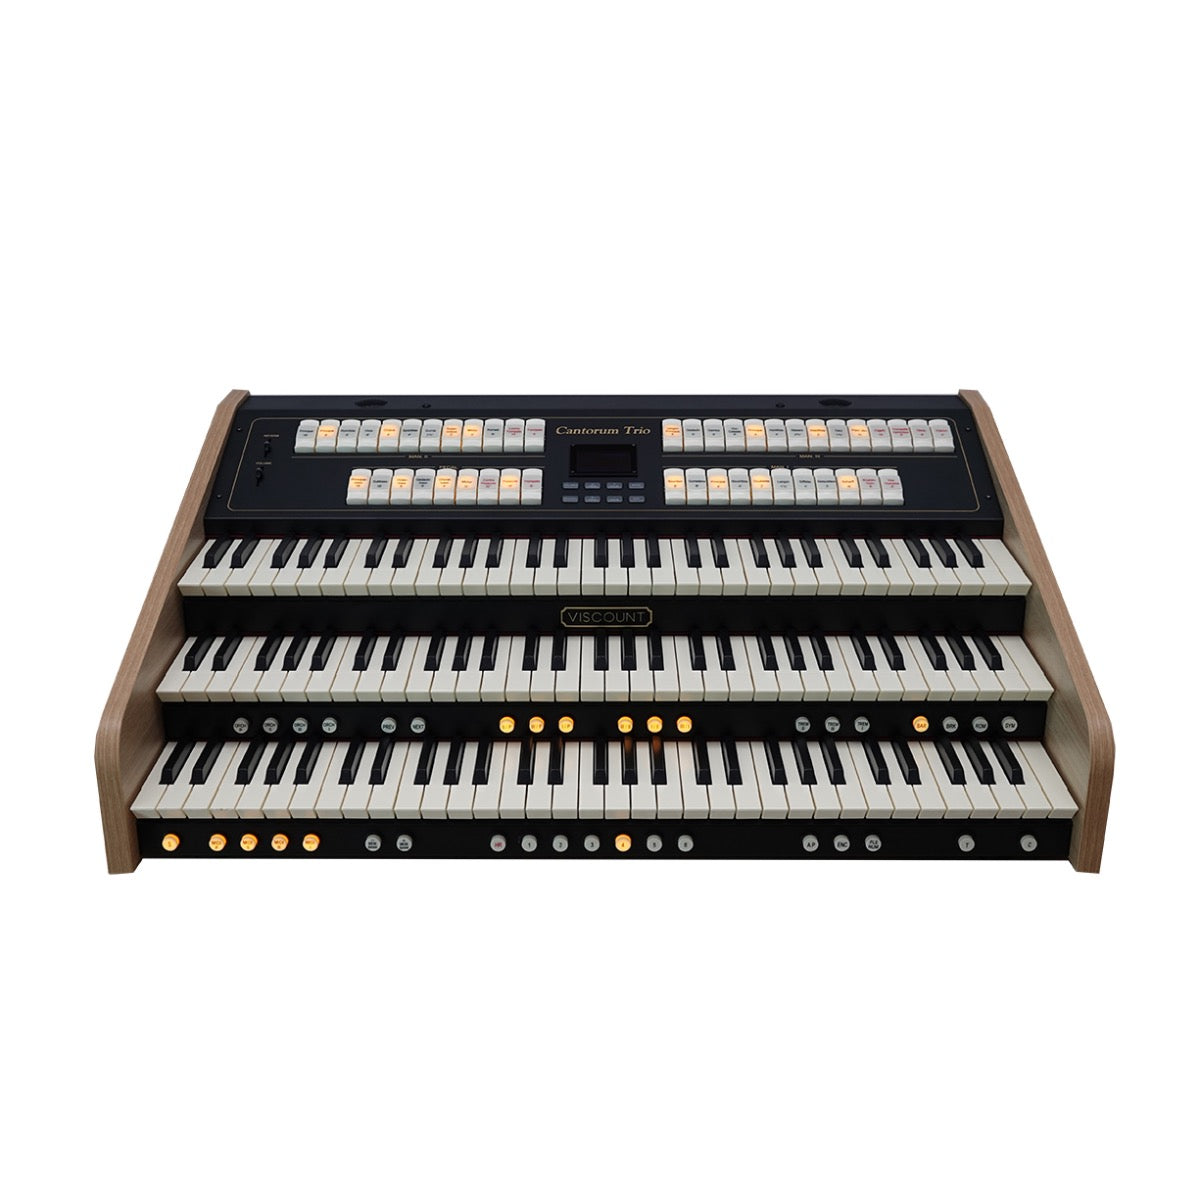 Viscount Cantorum Trio 3 Manual Portable Organ, View 2